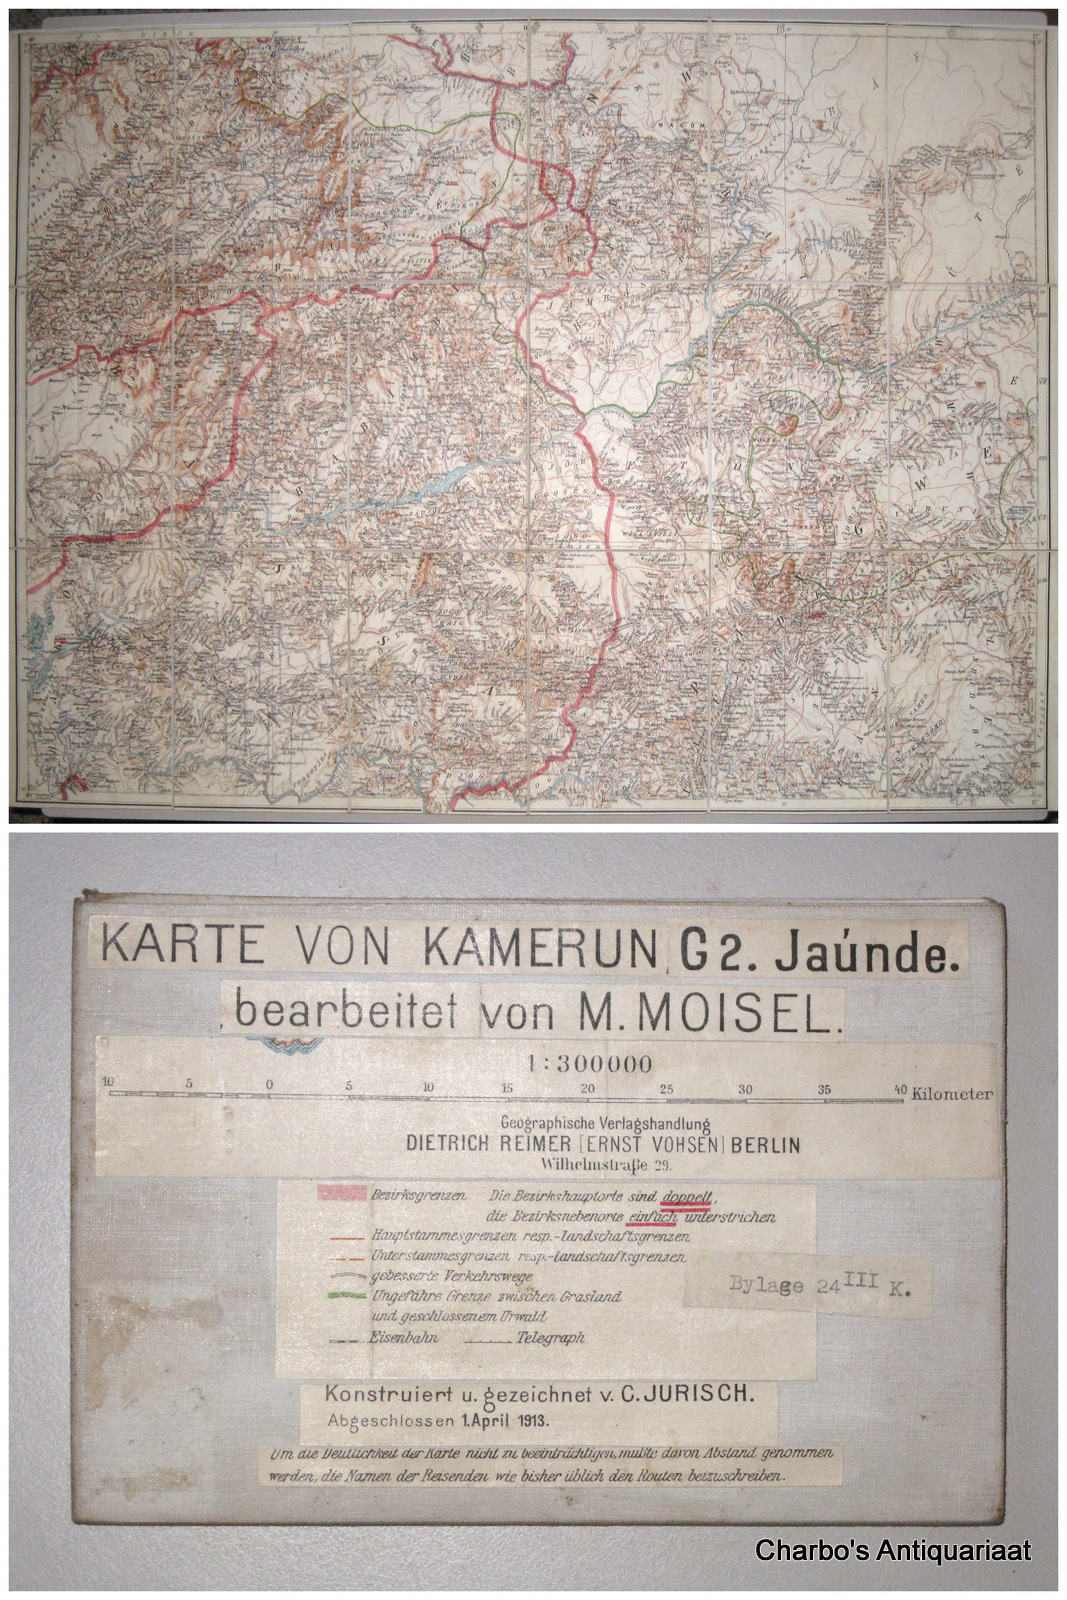 KRAUSE, G. & JURISCH, C., -  Karte von Kamerun, G2. Jande. 1:300000. Bearbeitet von M. Moisel. Konstruiert u. gezeichnet v. C. Jurisch.